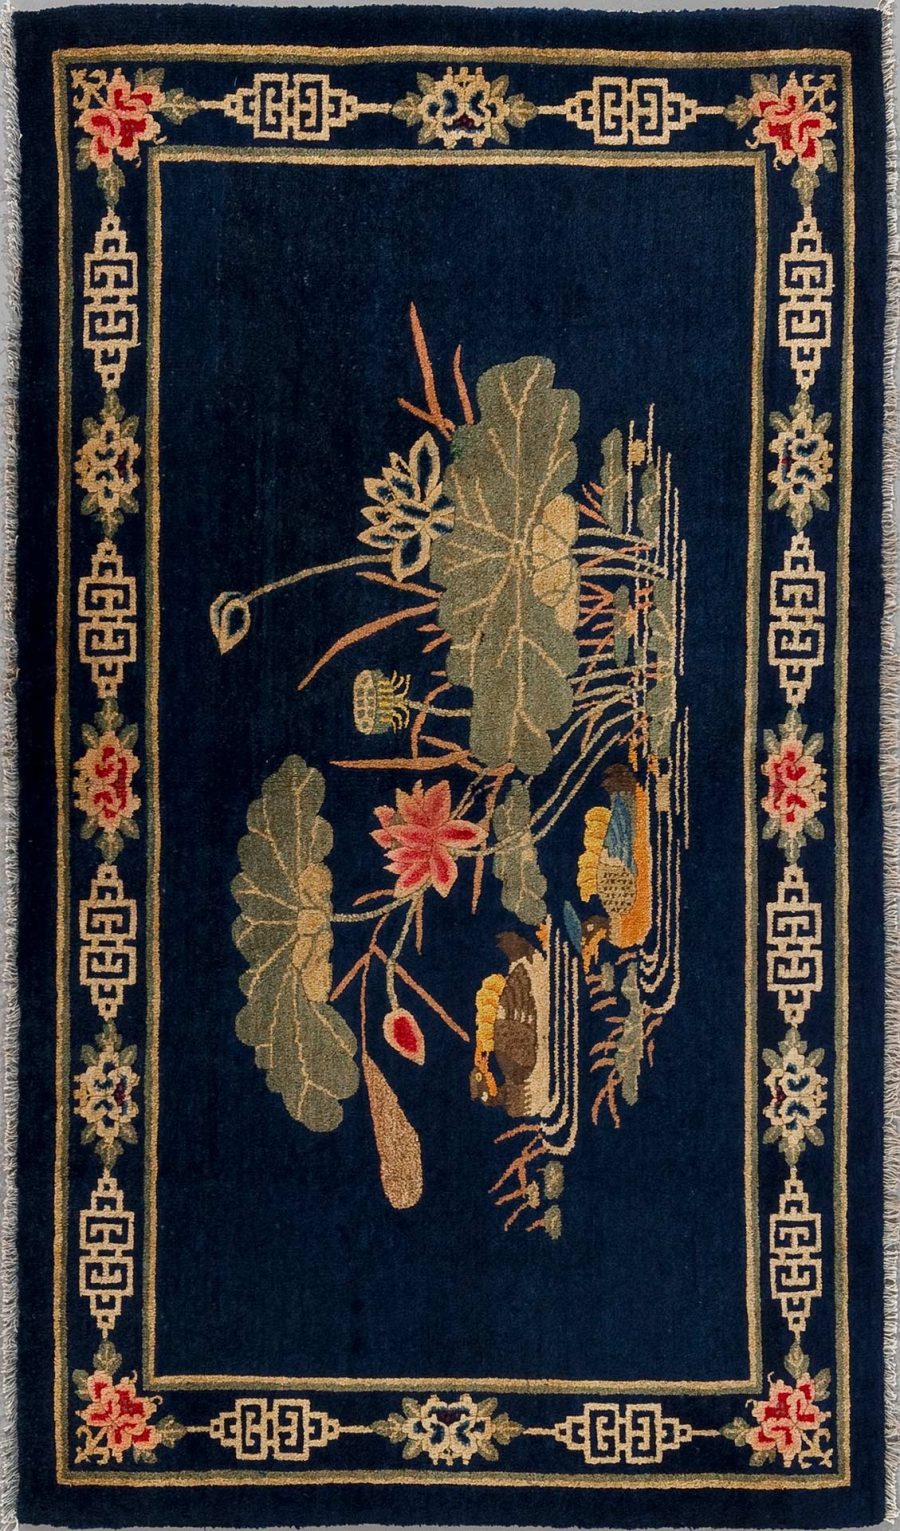 Dunkelblauer Teppich mit orientalischen Mustern und stilisiertem Blumen- und Blätterdesign in Beige, Braun und Rottönen mit einer gelben und grauen Bordüre, die traditionelle geometrische und florale Elemente aufweist.